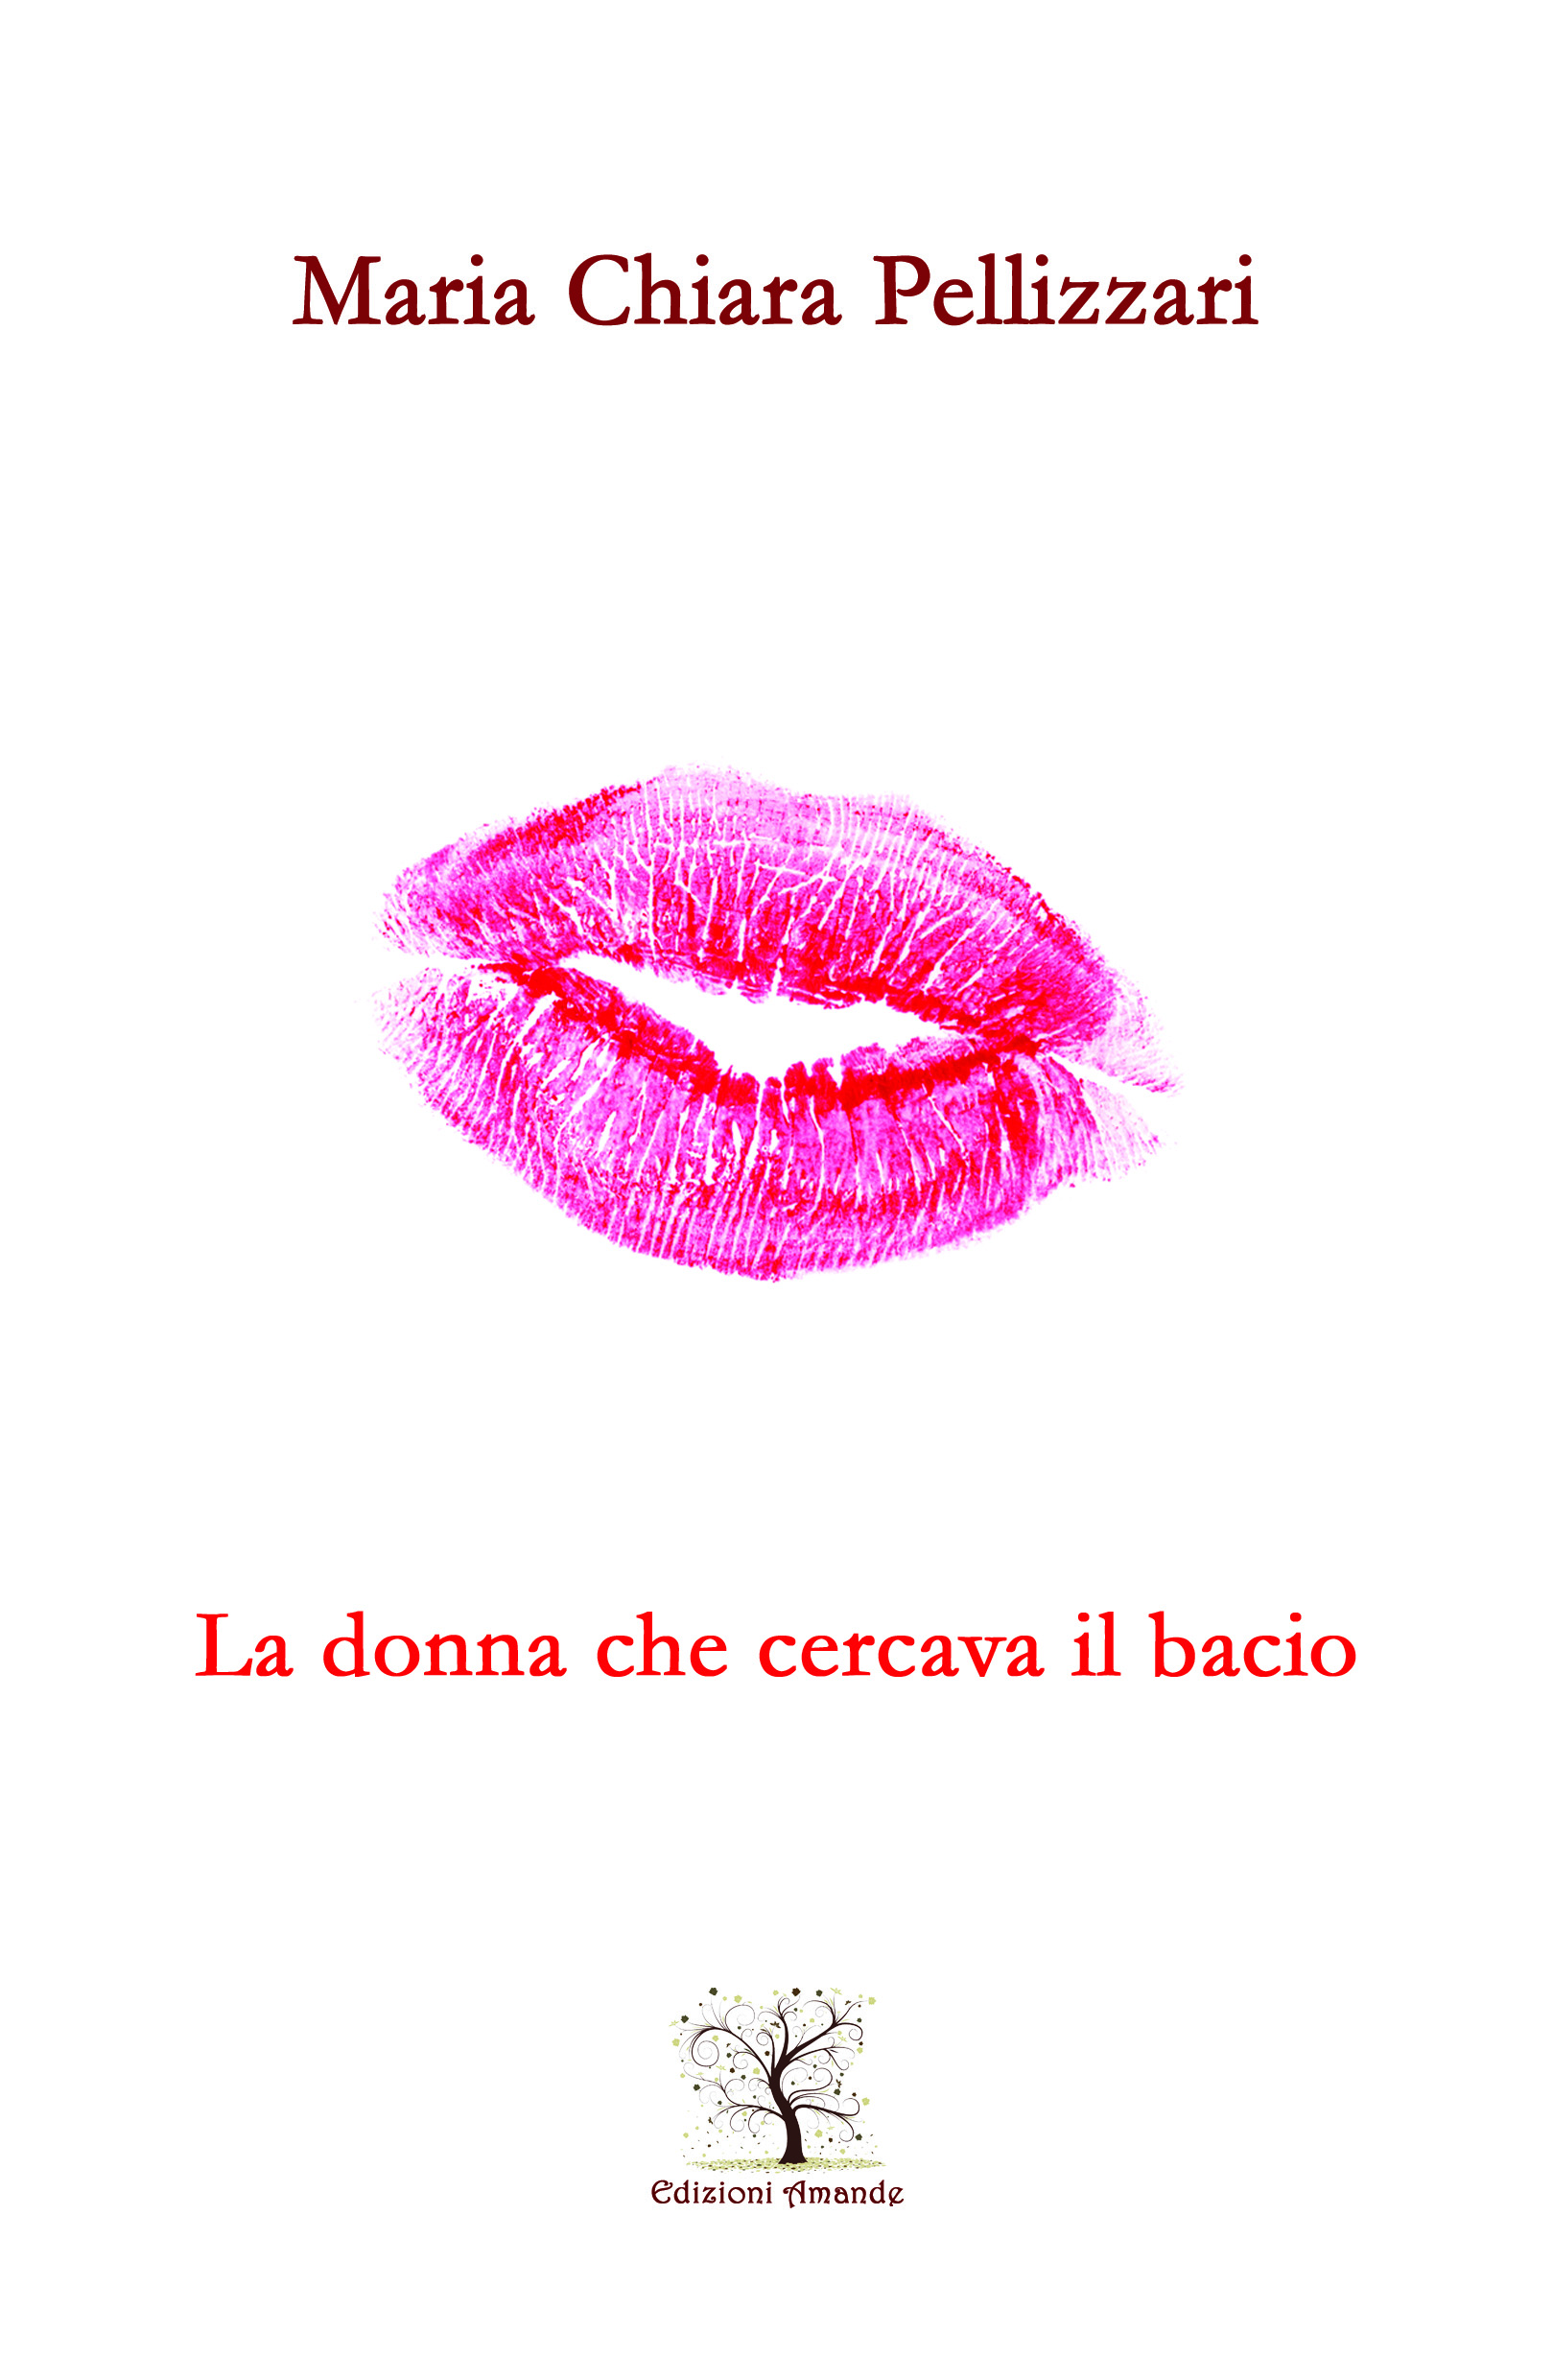 Maria Chiara Pellizzari: “La donna che cercava il bacio”